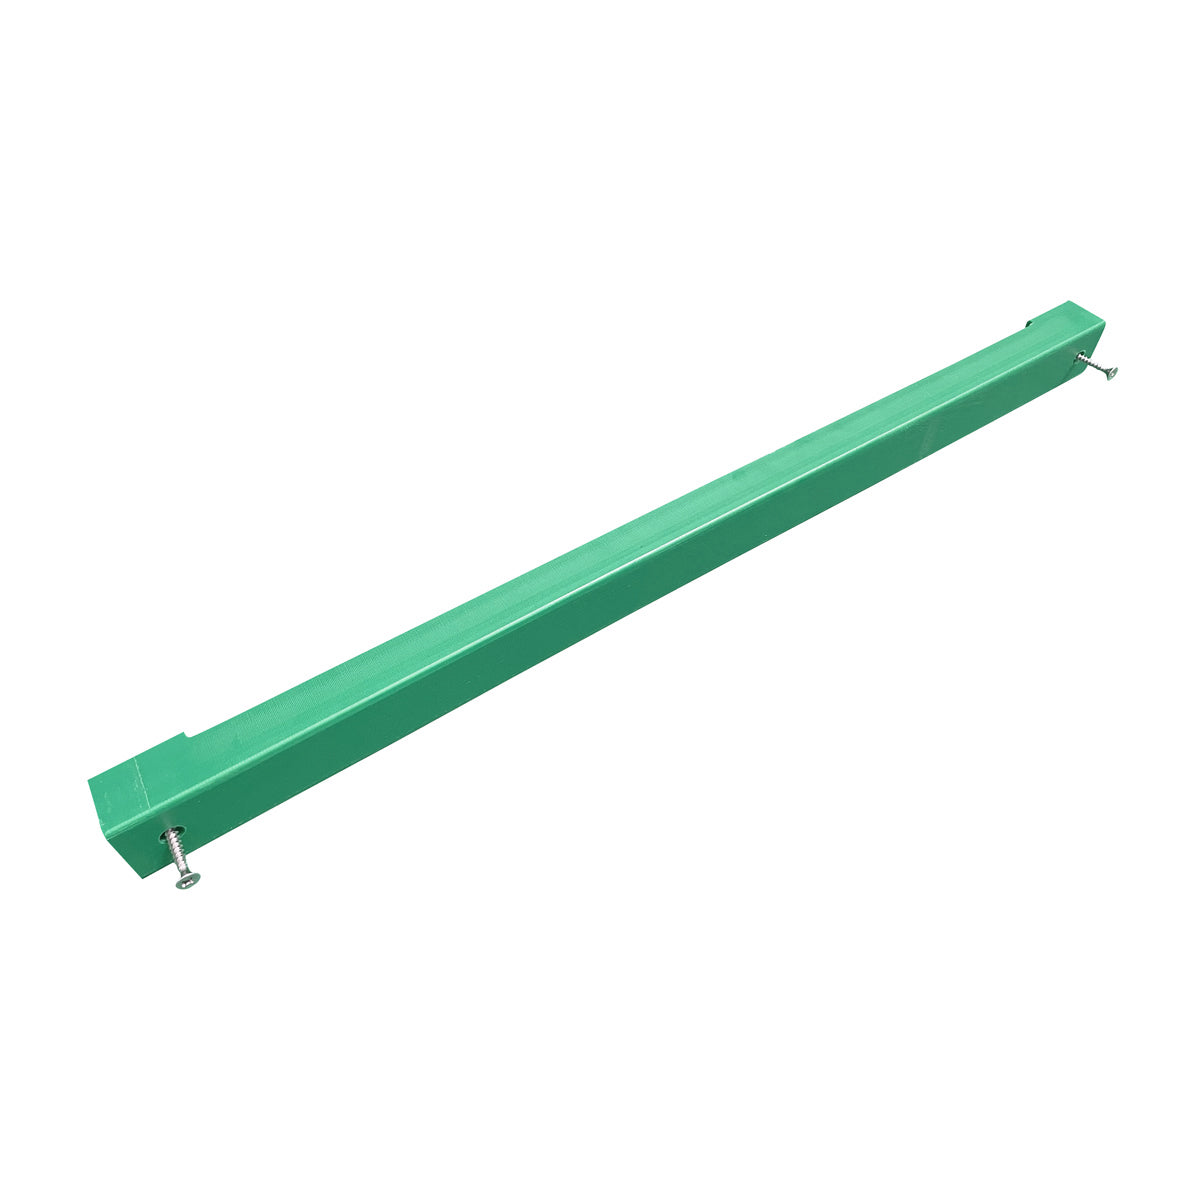 Knivholder til skjærebrett - 60 cm - grønn